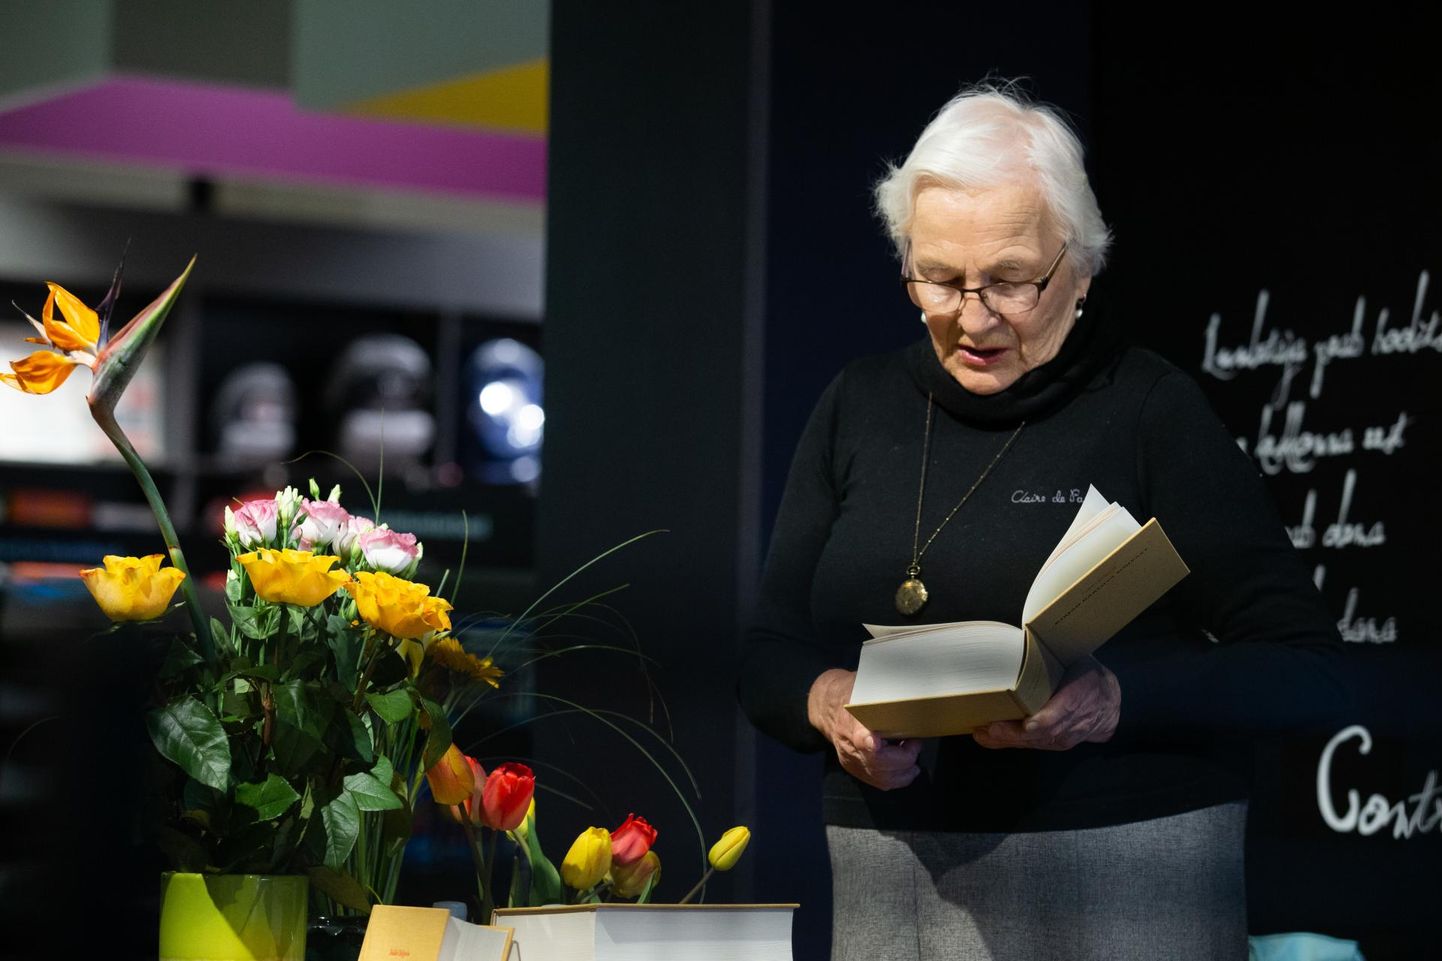 Malle Salupere tutvustas raamatut «Kirjad Karlova mõisast» esmalt 8. mail Tartu kaubamaja Apollo raamatupoes (pildil). Karlova päevade kavas oli esitlus eile Anna Edasi kohvikus.